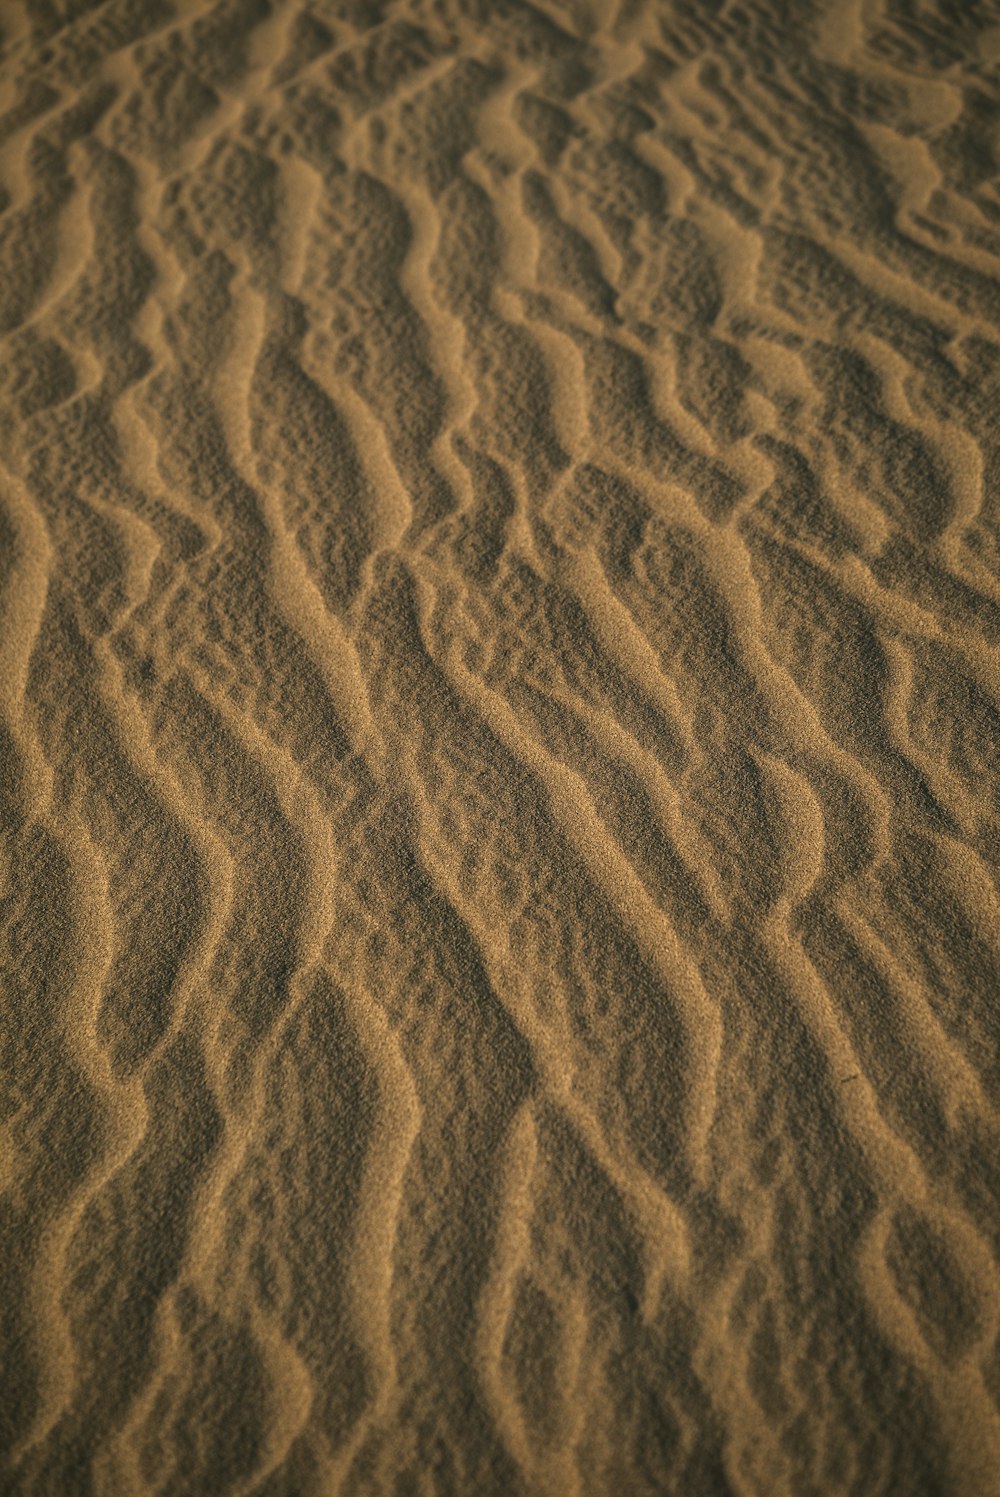 사람의 그림자가 있는 갈색 모래 사진 – Unsplash의 무료 텍스처 이미지